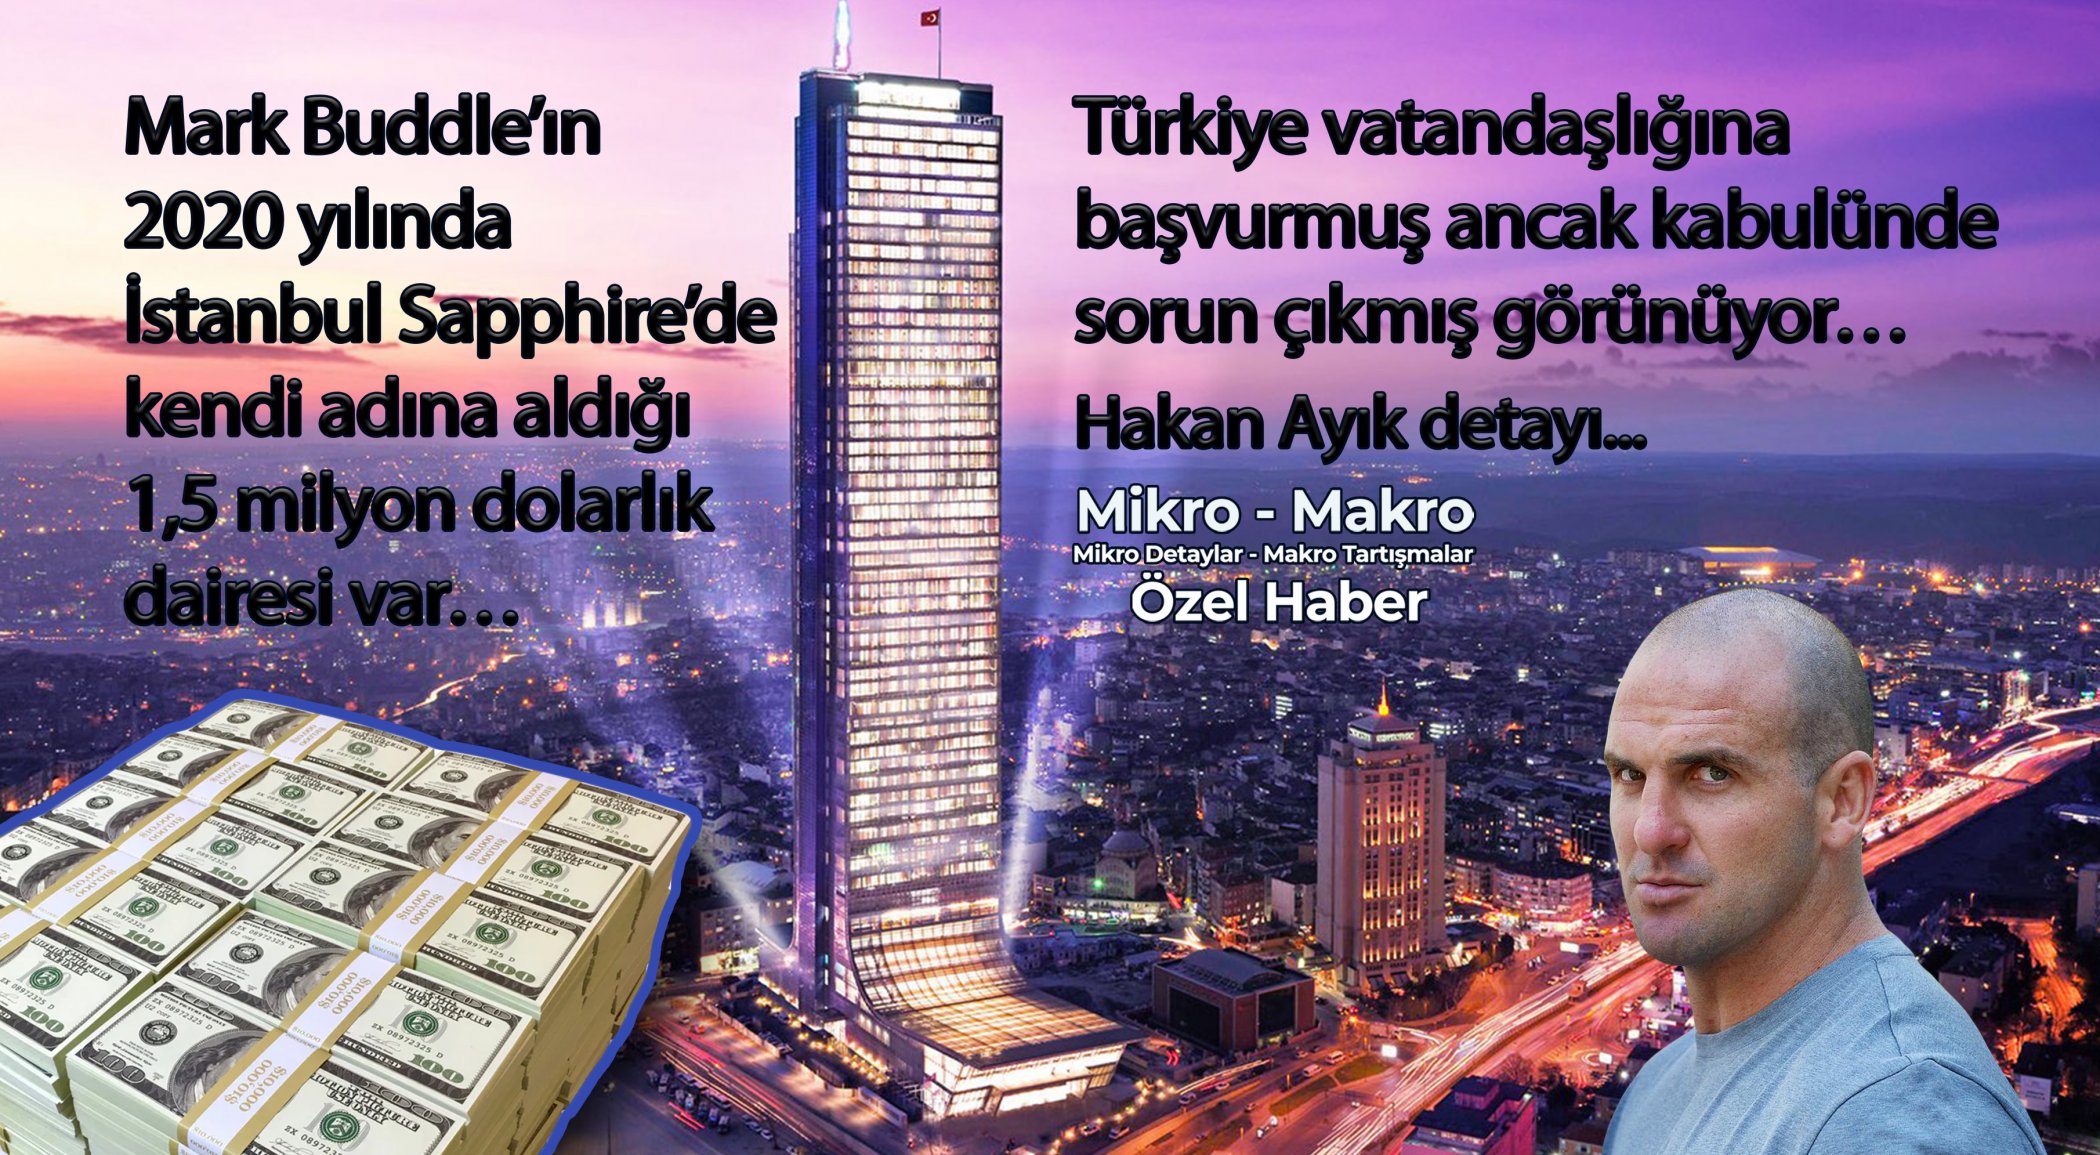 https://www.mikro-makro.net/mark-buddlein-2020-yilinda-istanbulda-kendi-ismine-tapusunu-aldigi-dairesi-var